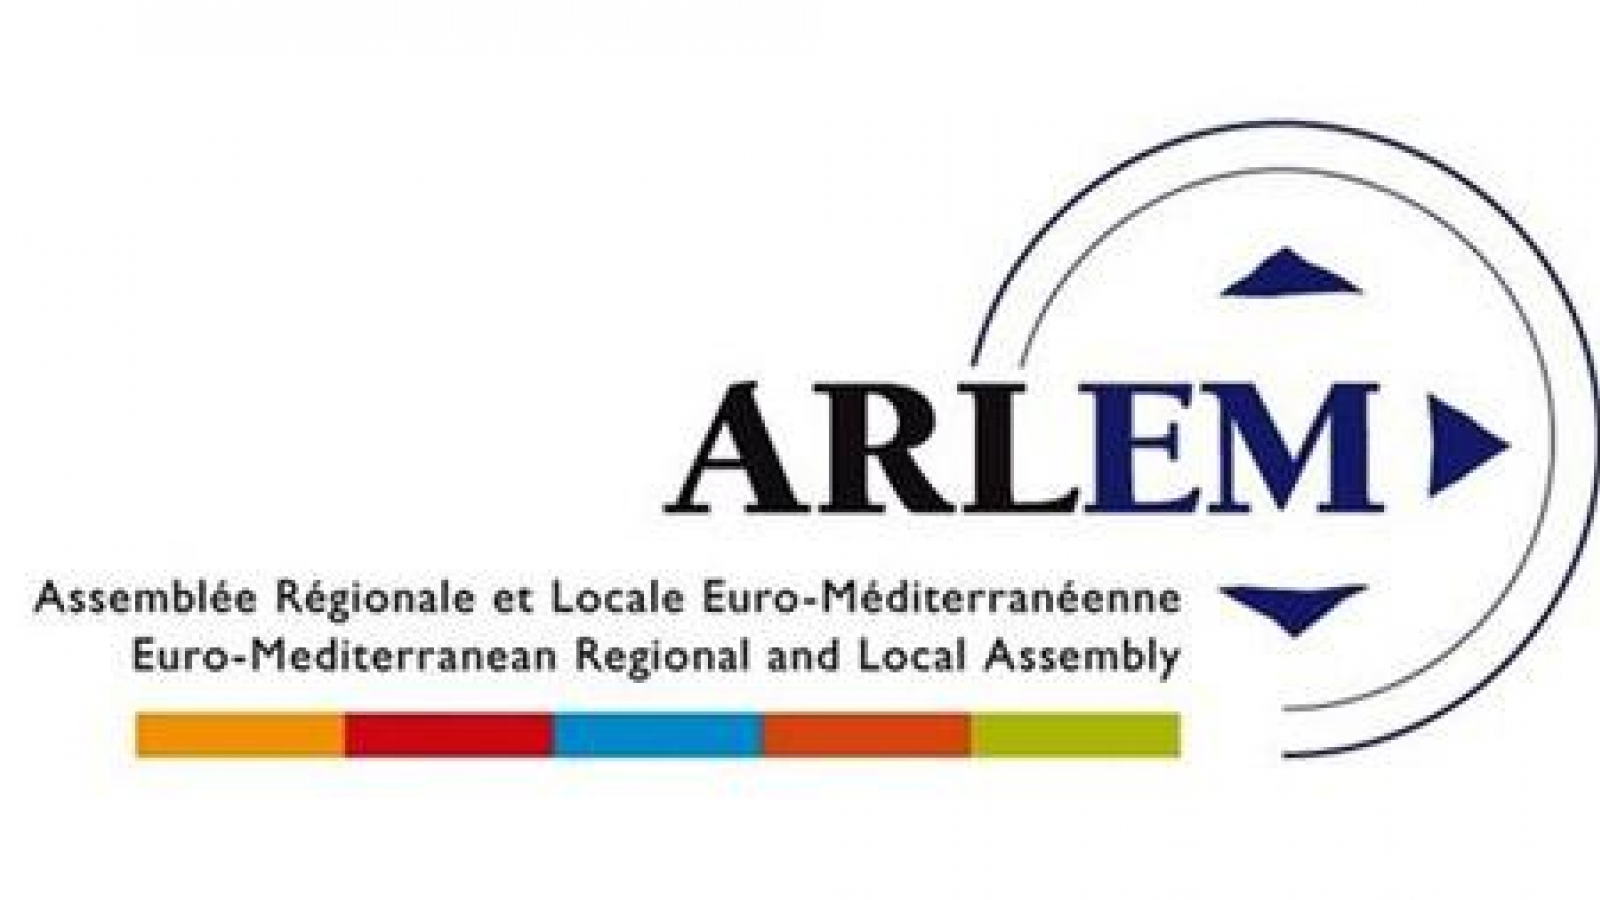 10-я годовщина региональной и местной средиземноморской ассамблеи состоится в 2019 году в Севилье